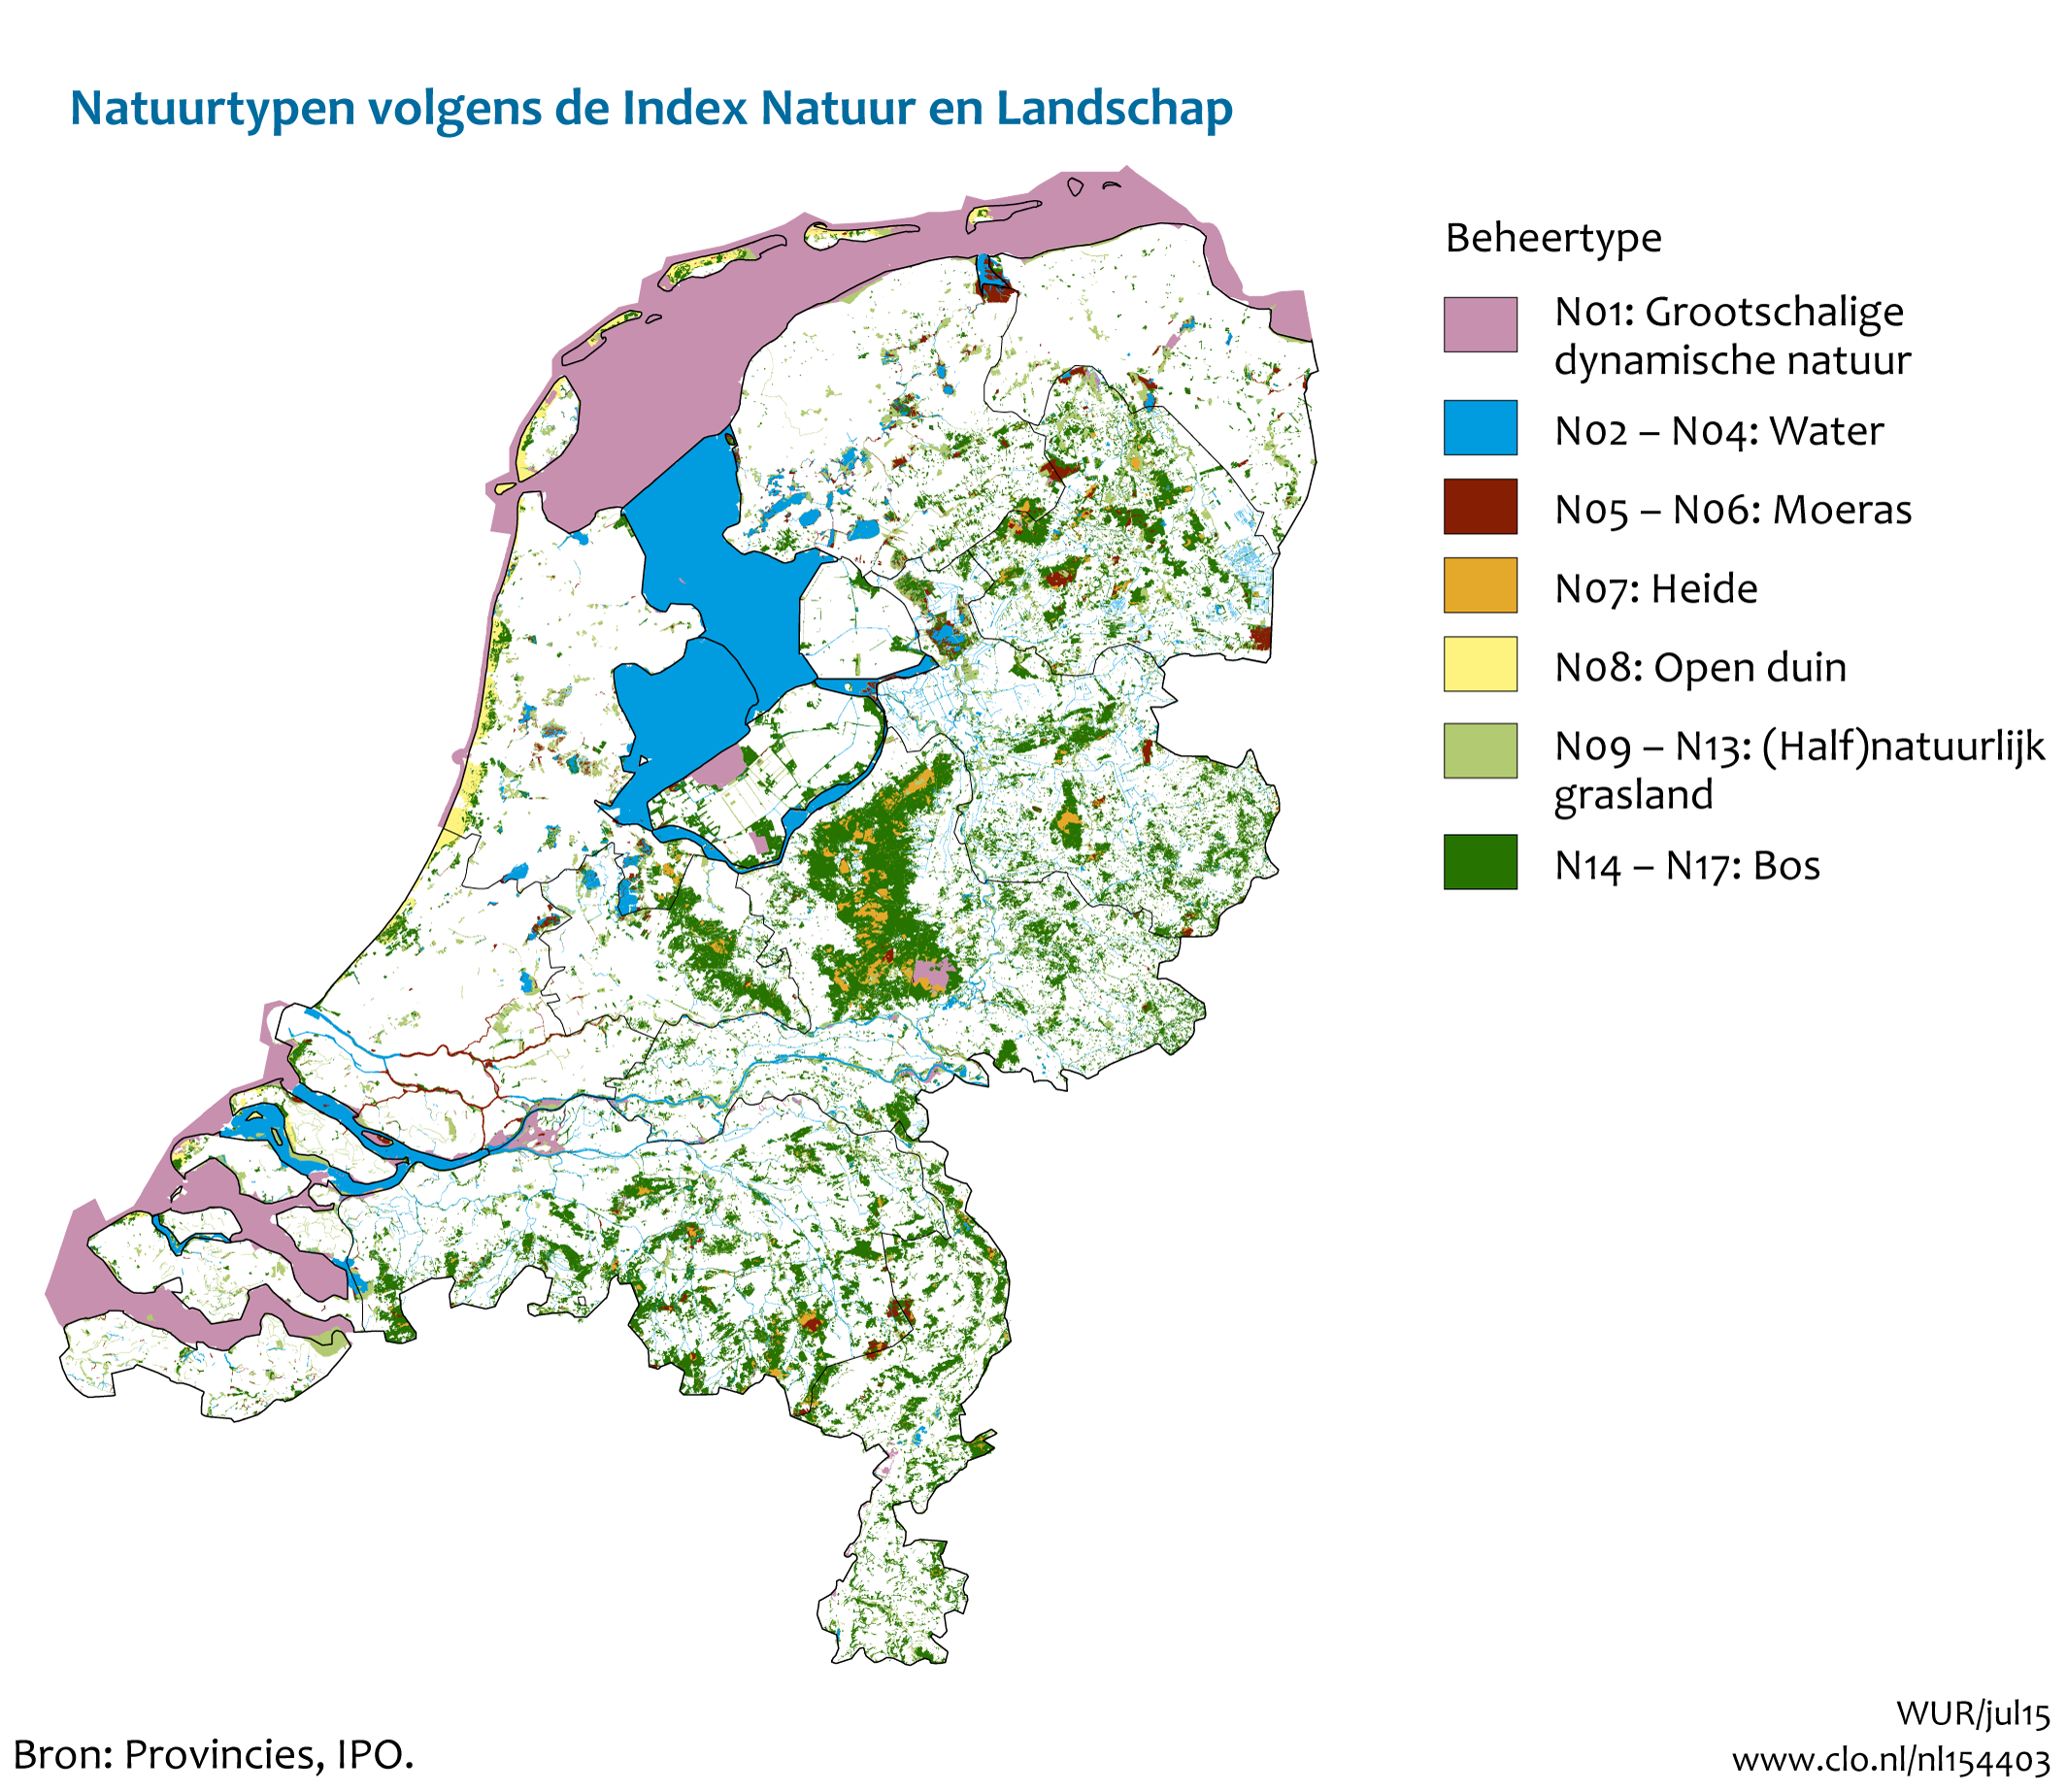 Figuur Natuurtypen van de Index NL. In de rest van de tekst wordt deze figuur uitgebreider uitgelegd.